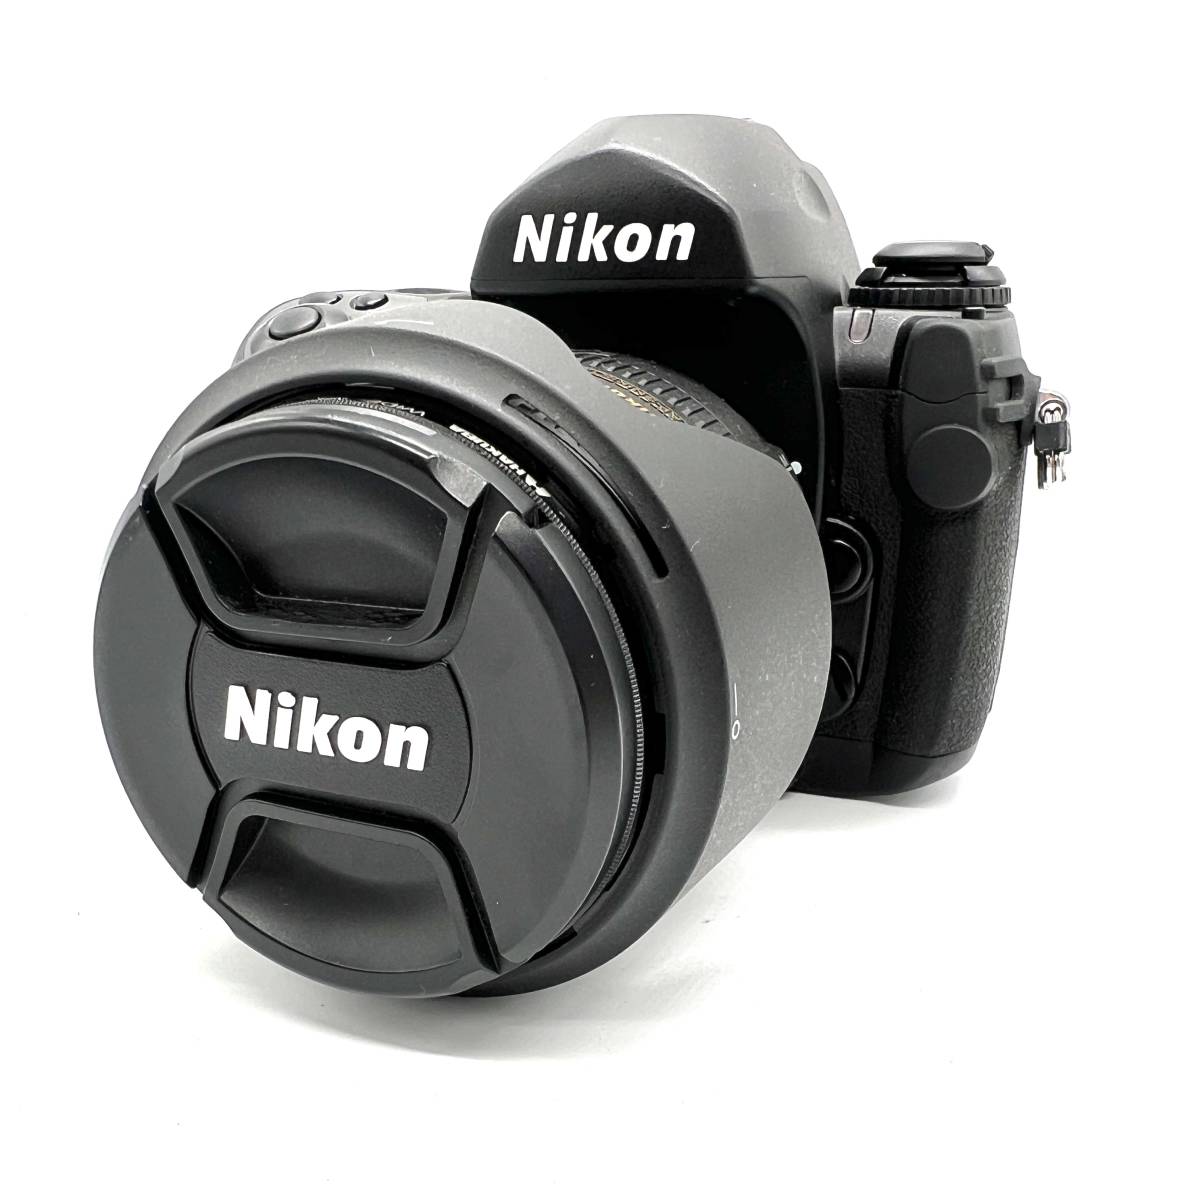 □Nikon ニコン F6 一眼 フィルムカメラ NIKKOR 16-85mm 1:3.5-5.6G ED